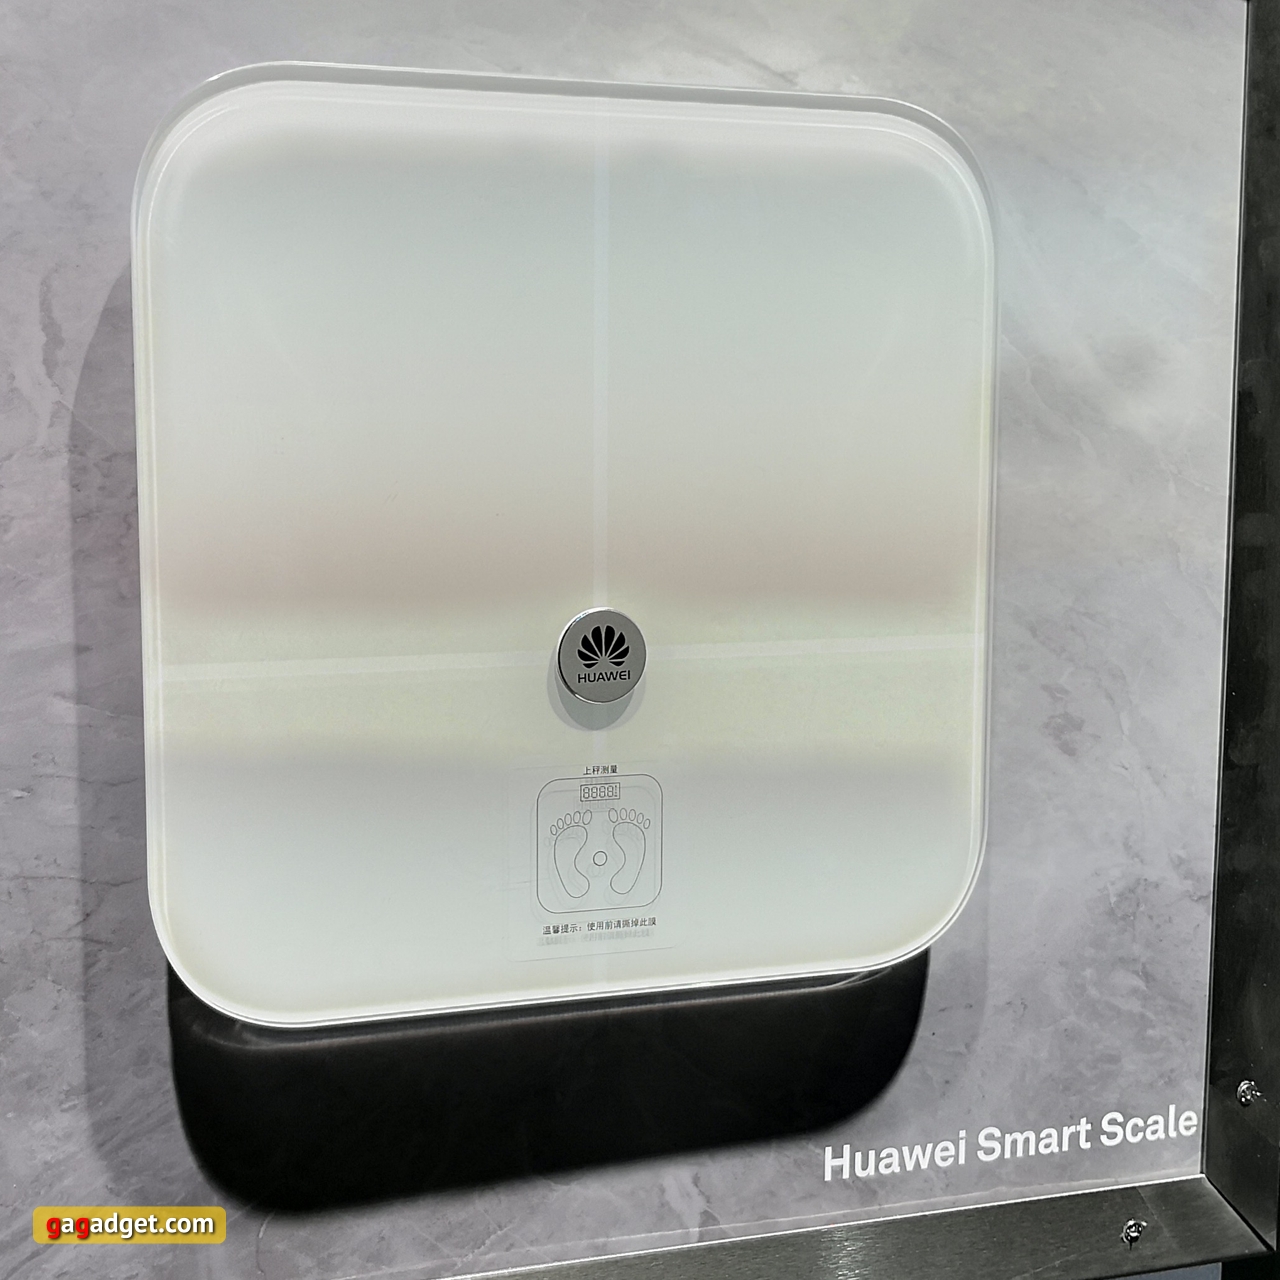 Huawei_Mate_10_smart_scale.jpg